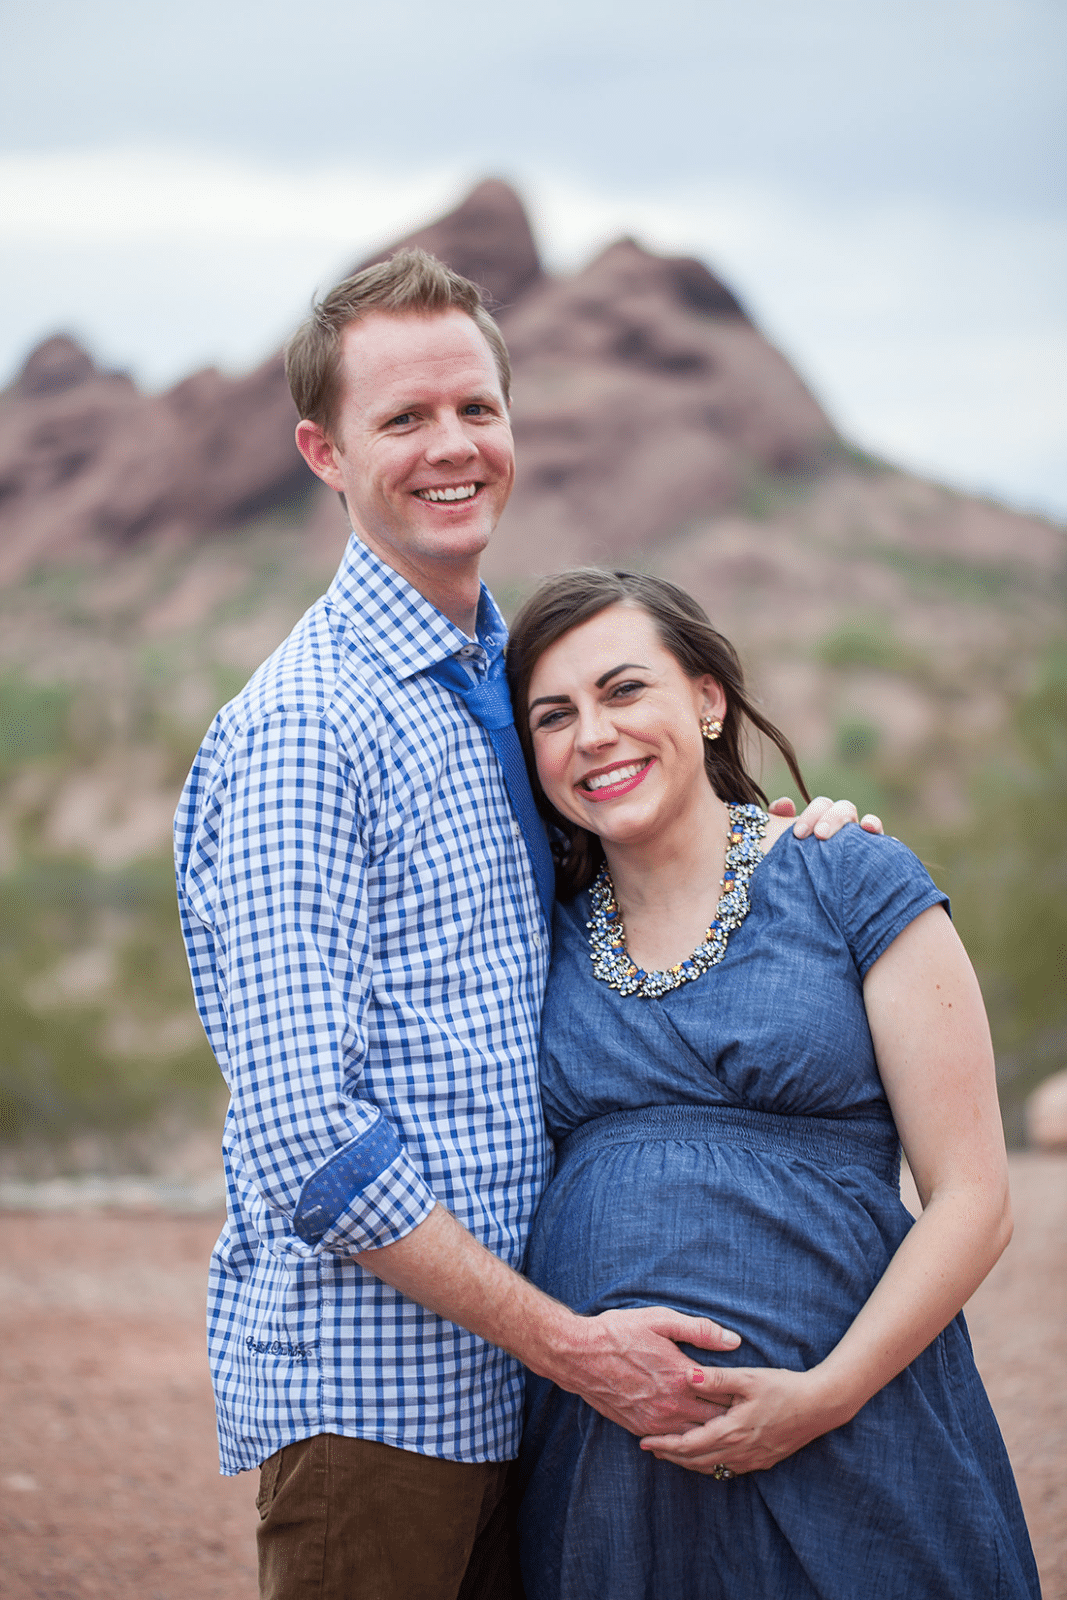 Maternity photo shoot ideas in Arizona. 